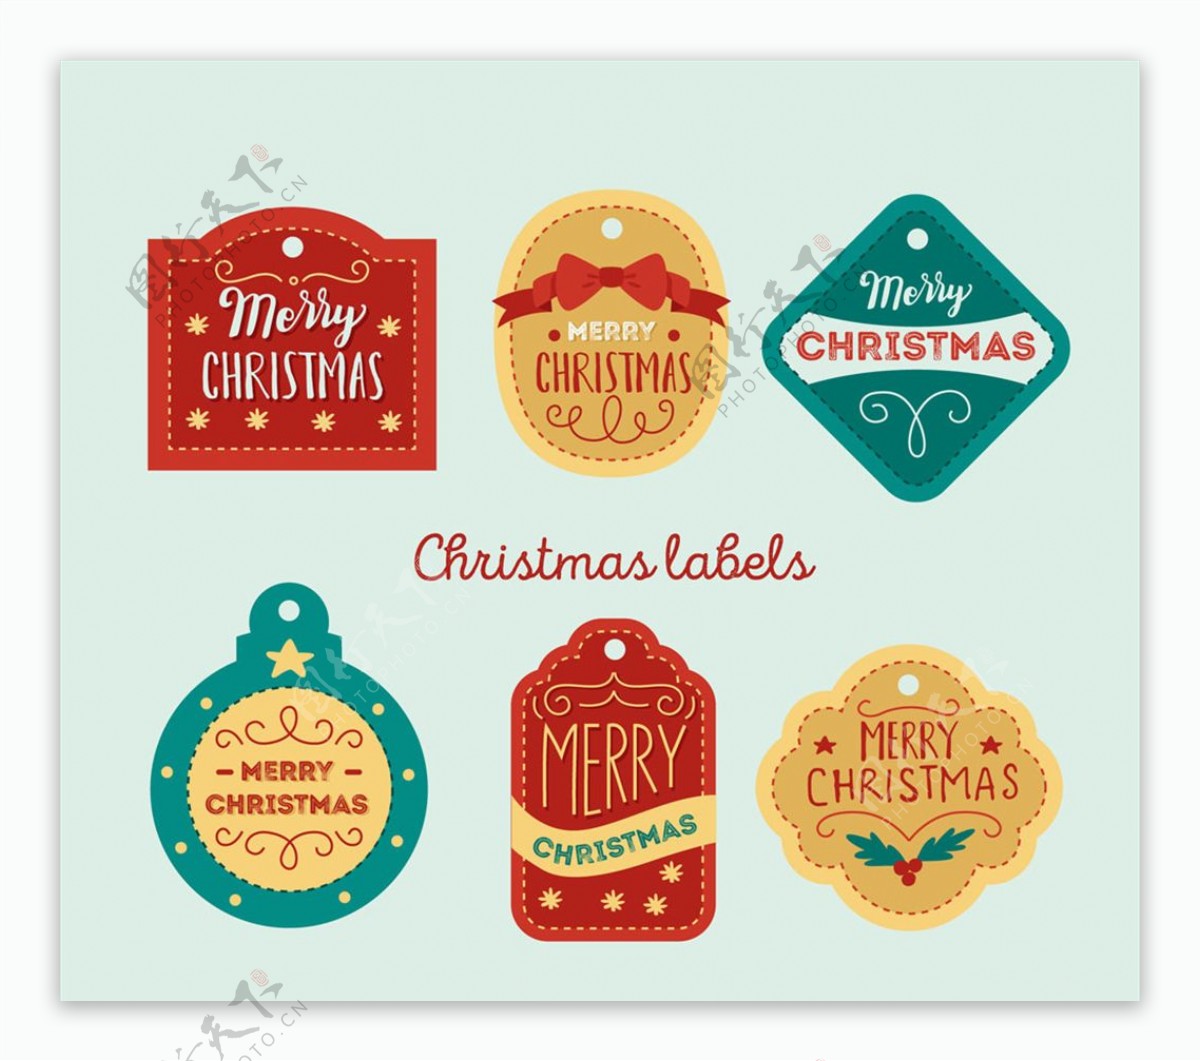 6款彩色圣诞节标签矢量素材